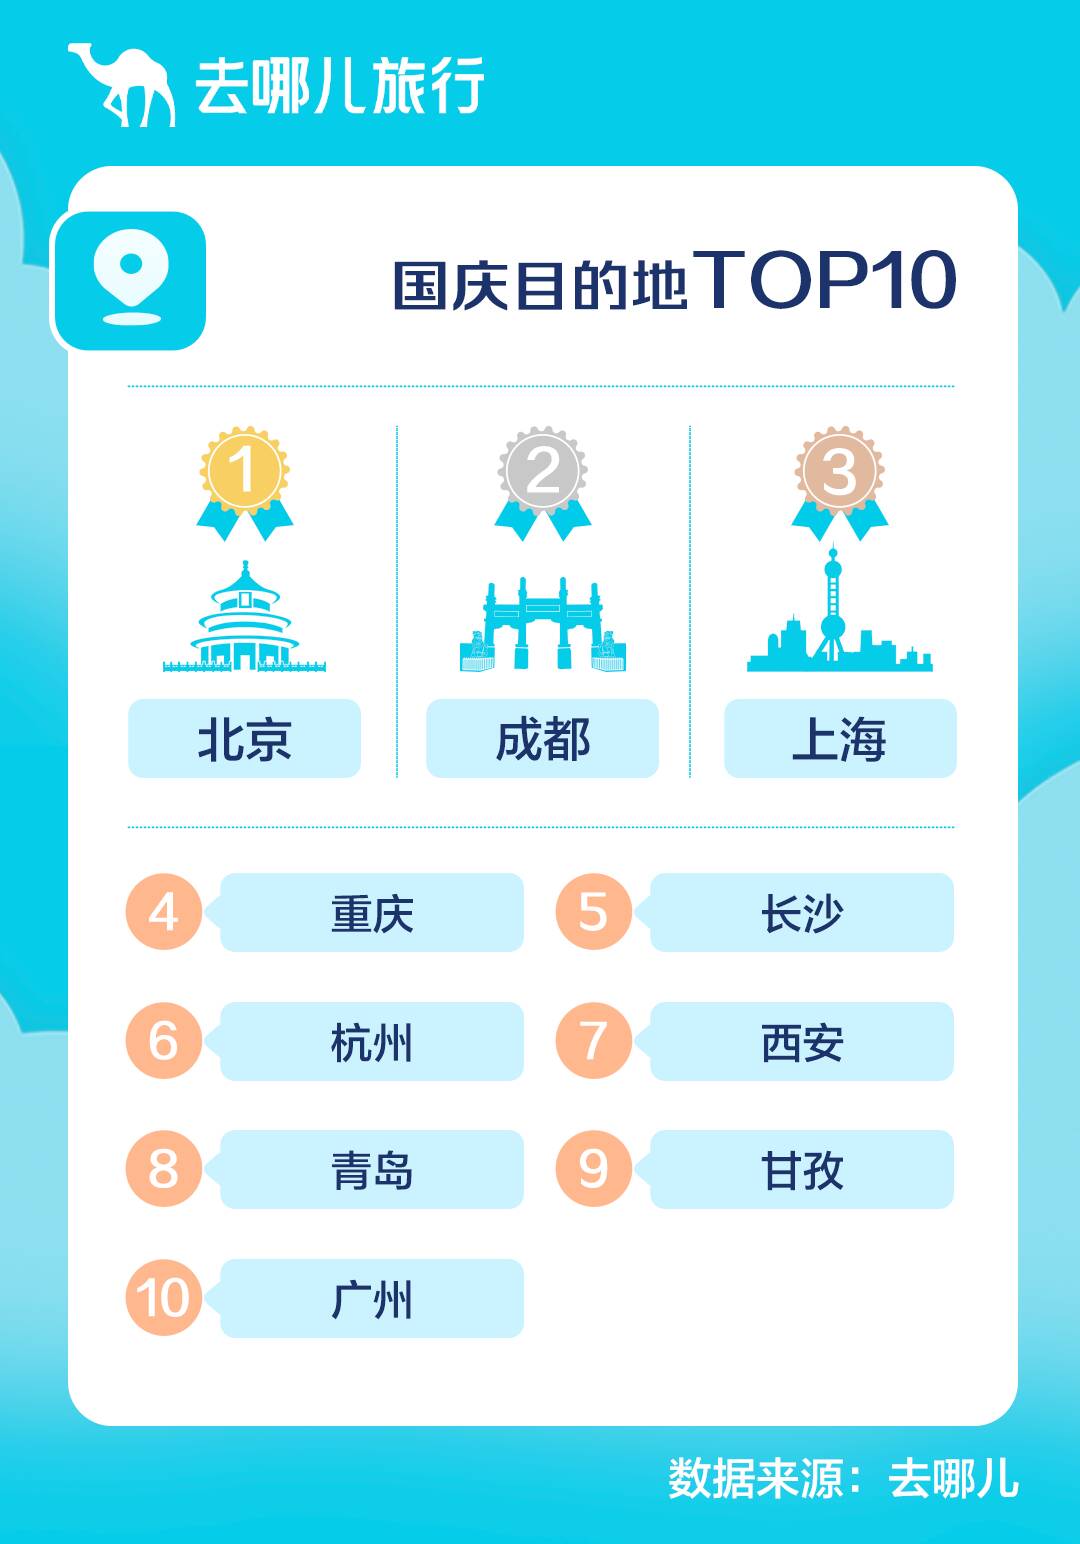 国庆假期小众及省内周边游销售旺  青岛进入国内目的地TOP10